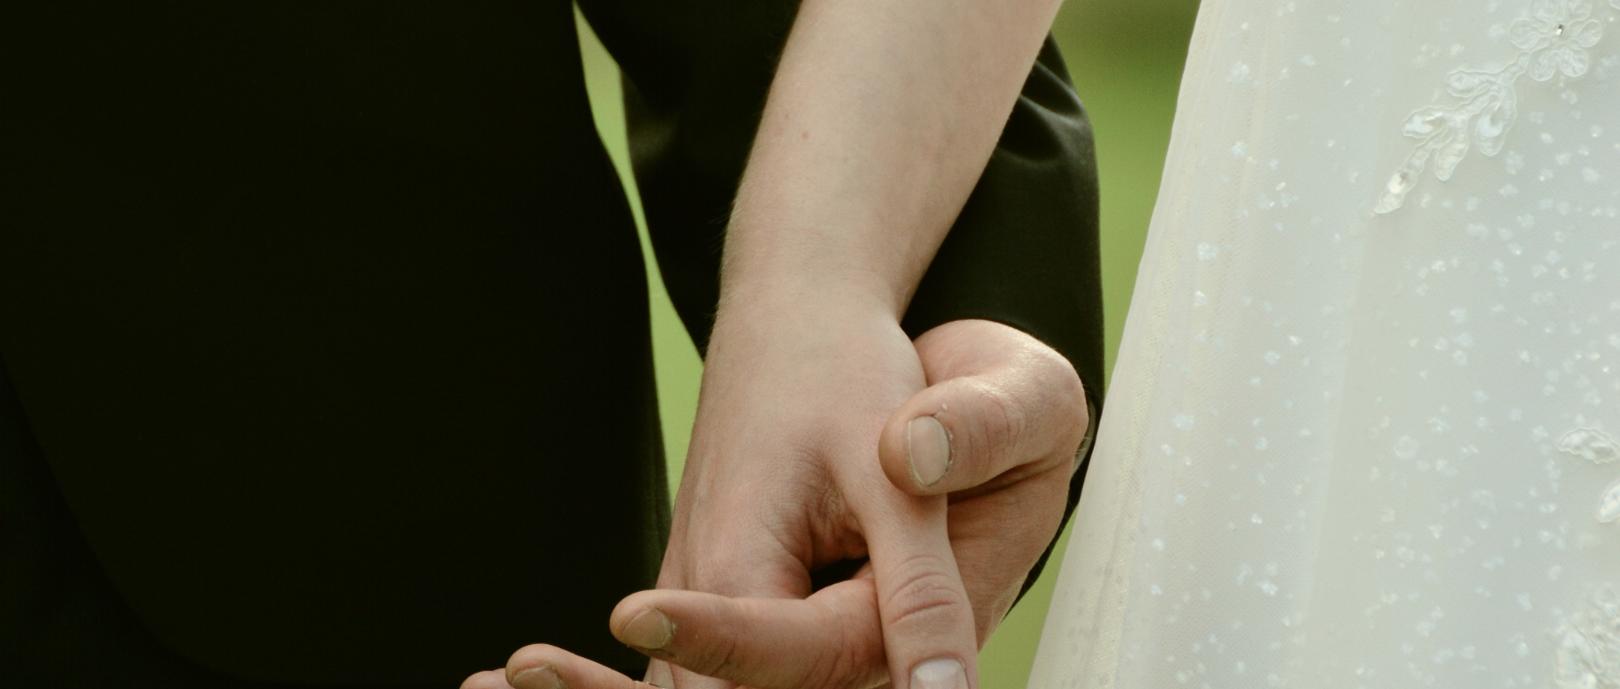 Brautpaar: Hände haltend (c) Quelle: pixabay.com